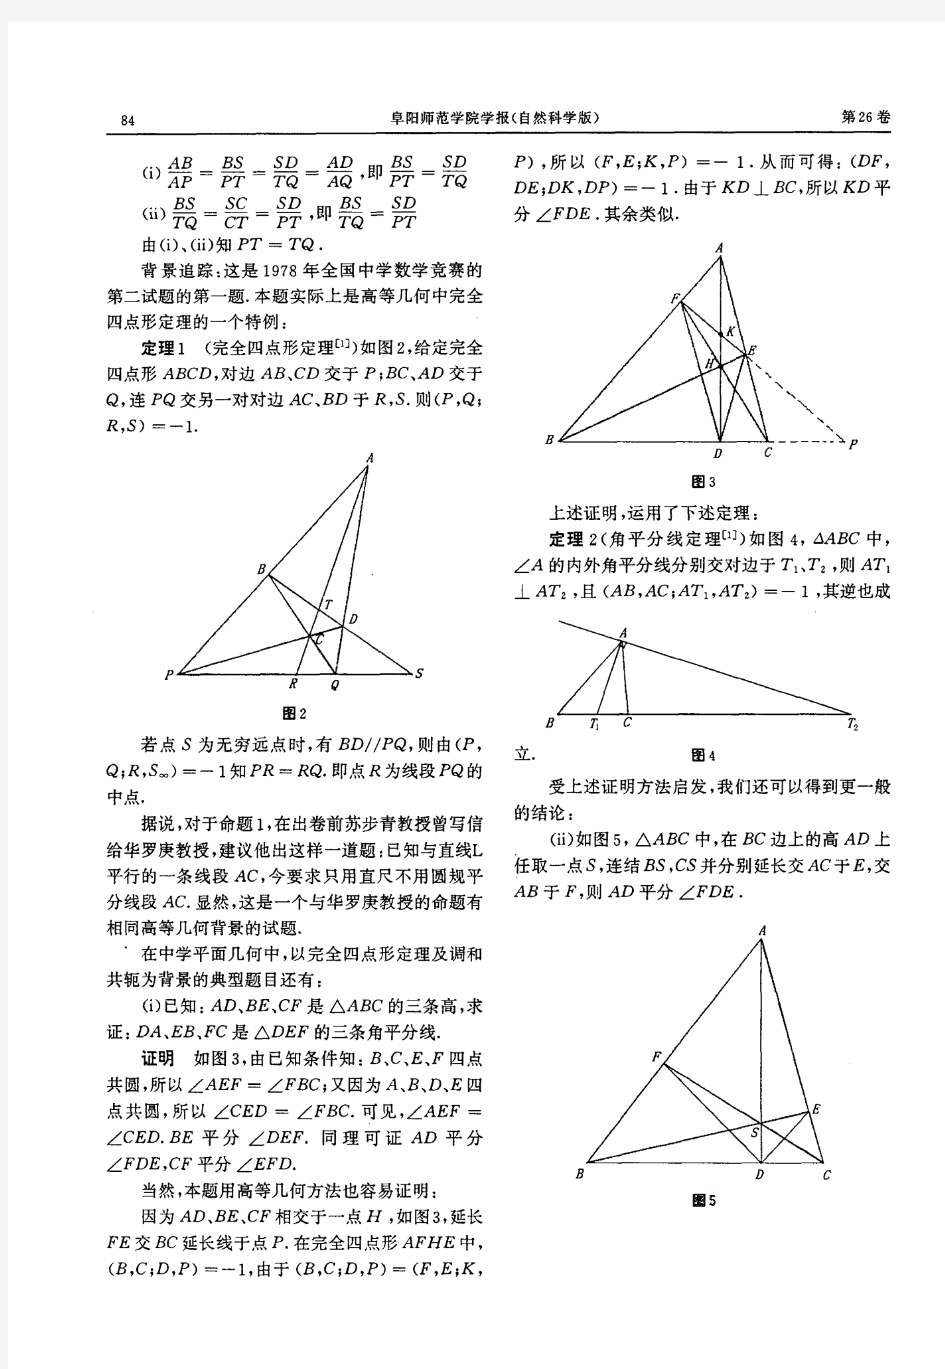 几个初等几何命题的高等几何背景追踪